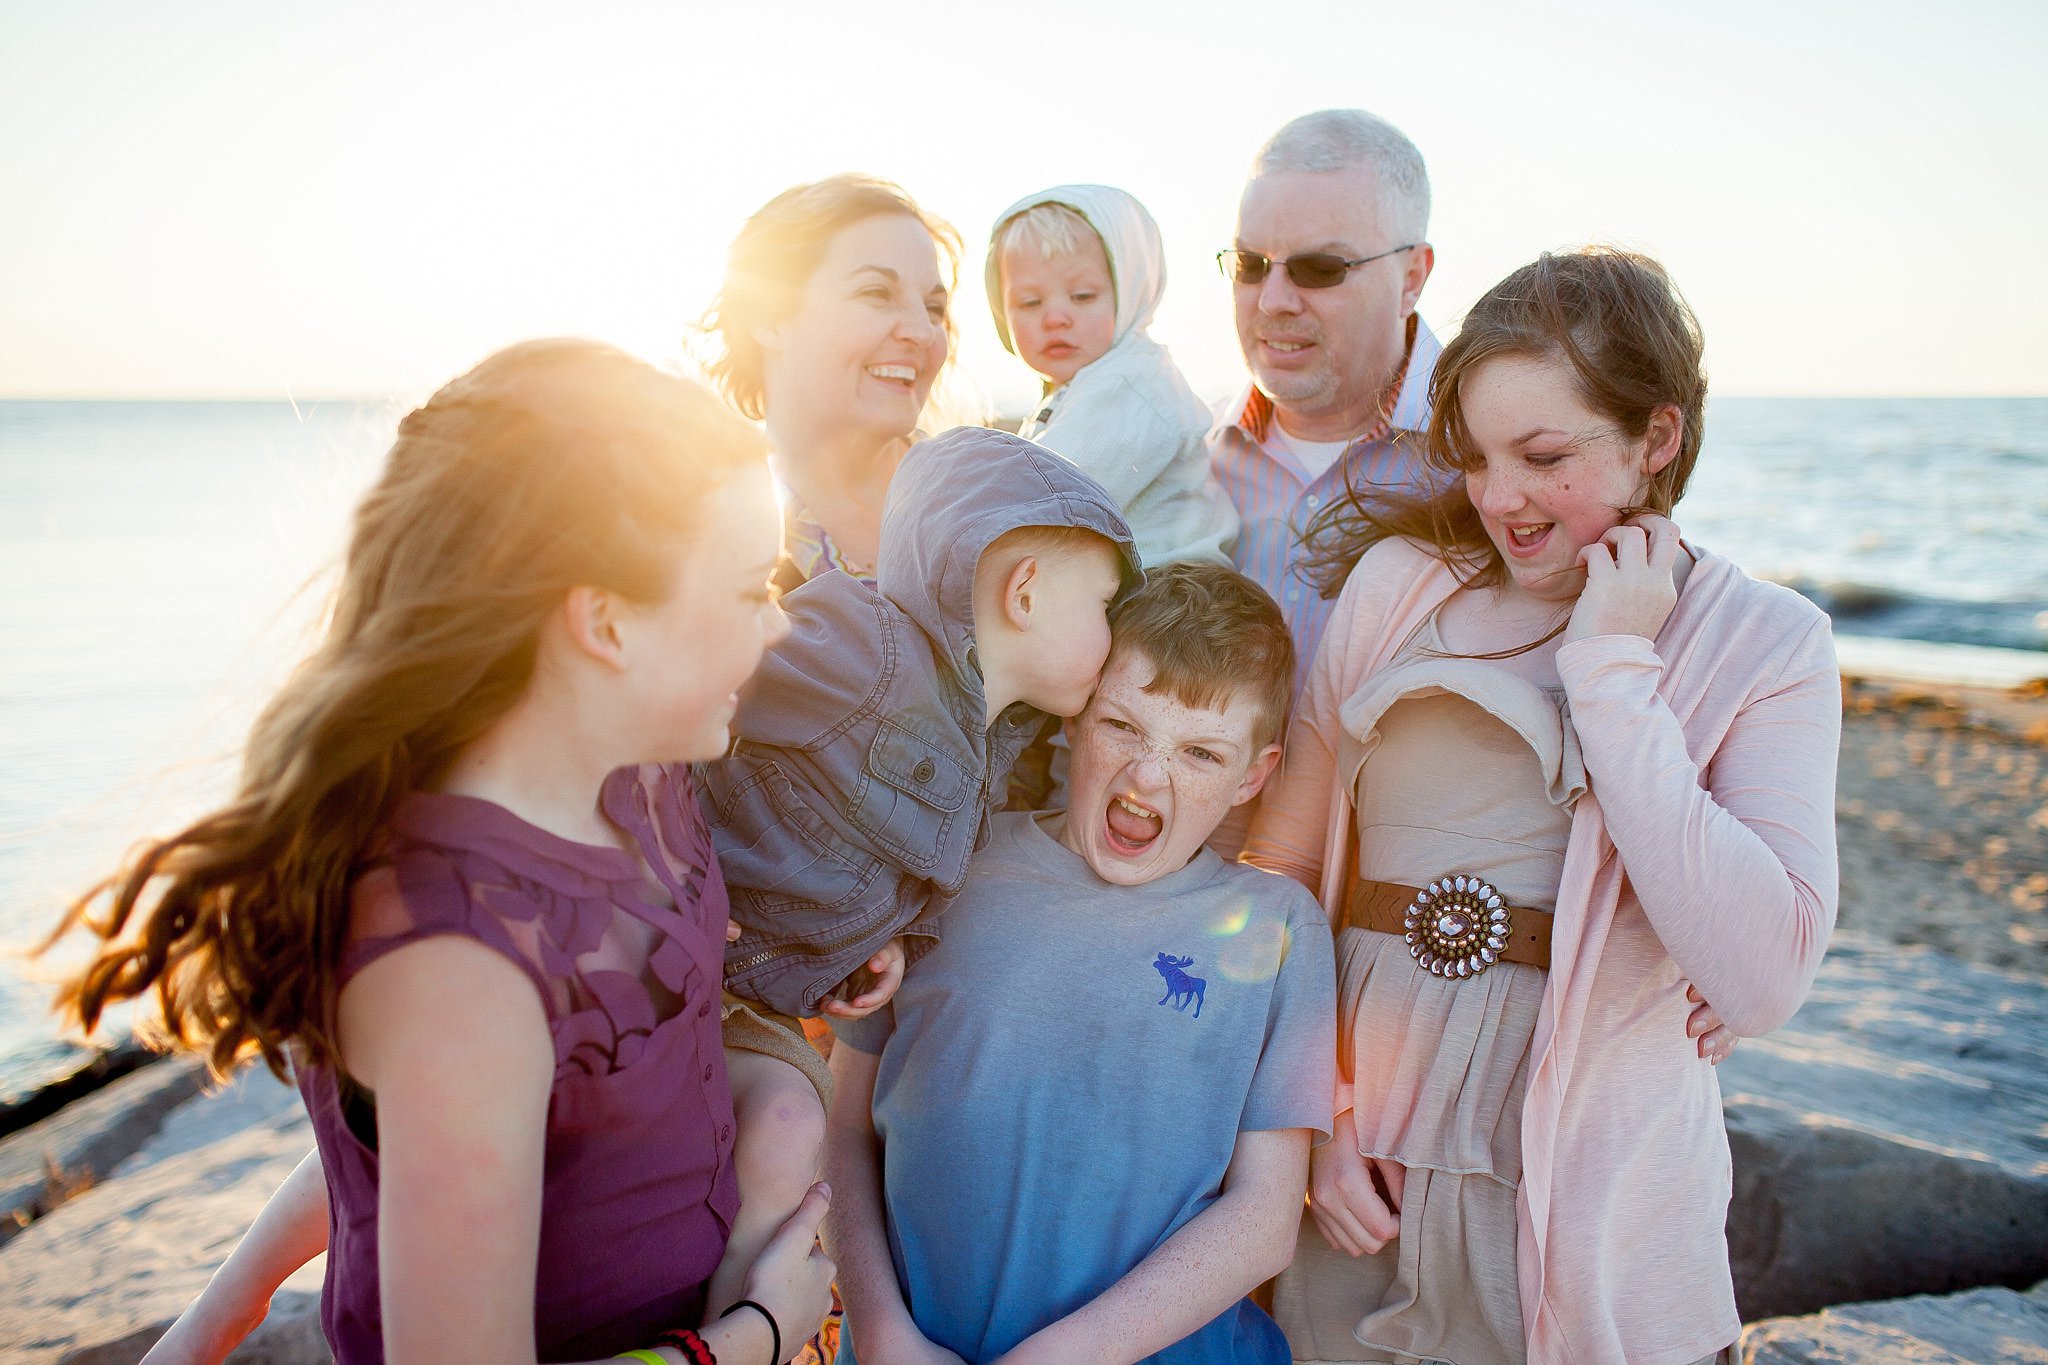 Donaghe Family | New Buffalo Michigan Family Photographery | Toni Jay Photography